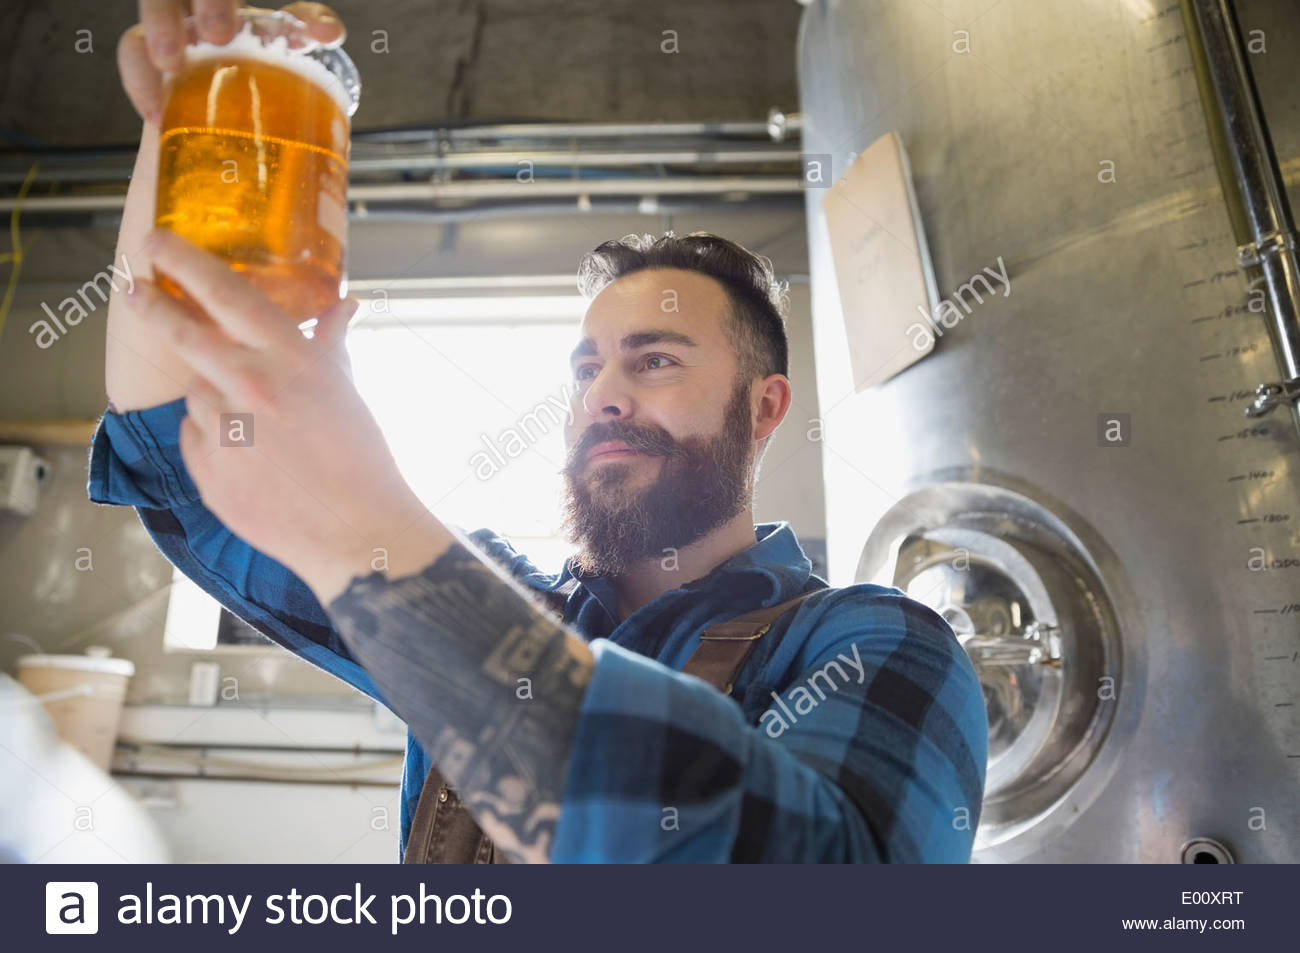 Brewery worker examining beer in beaker Stock Photo